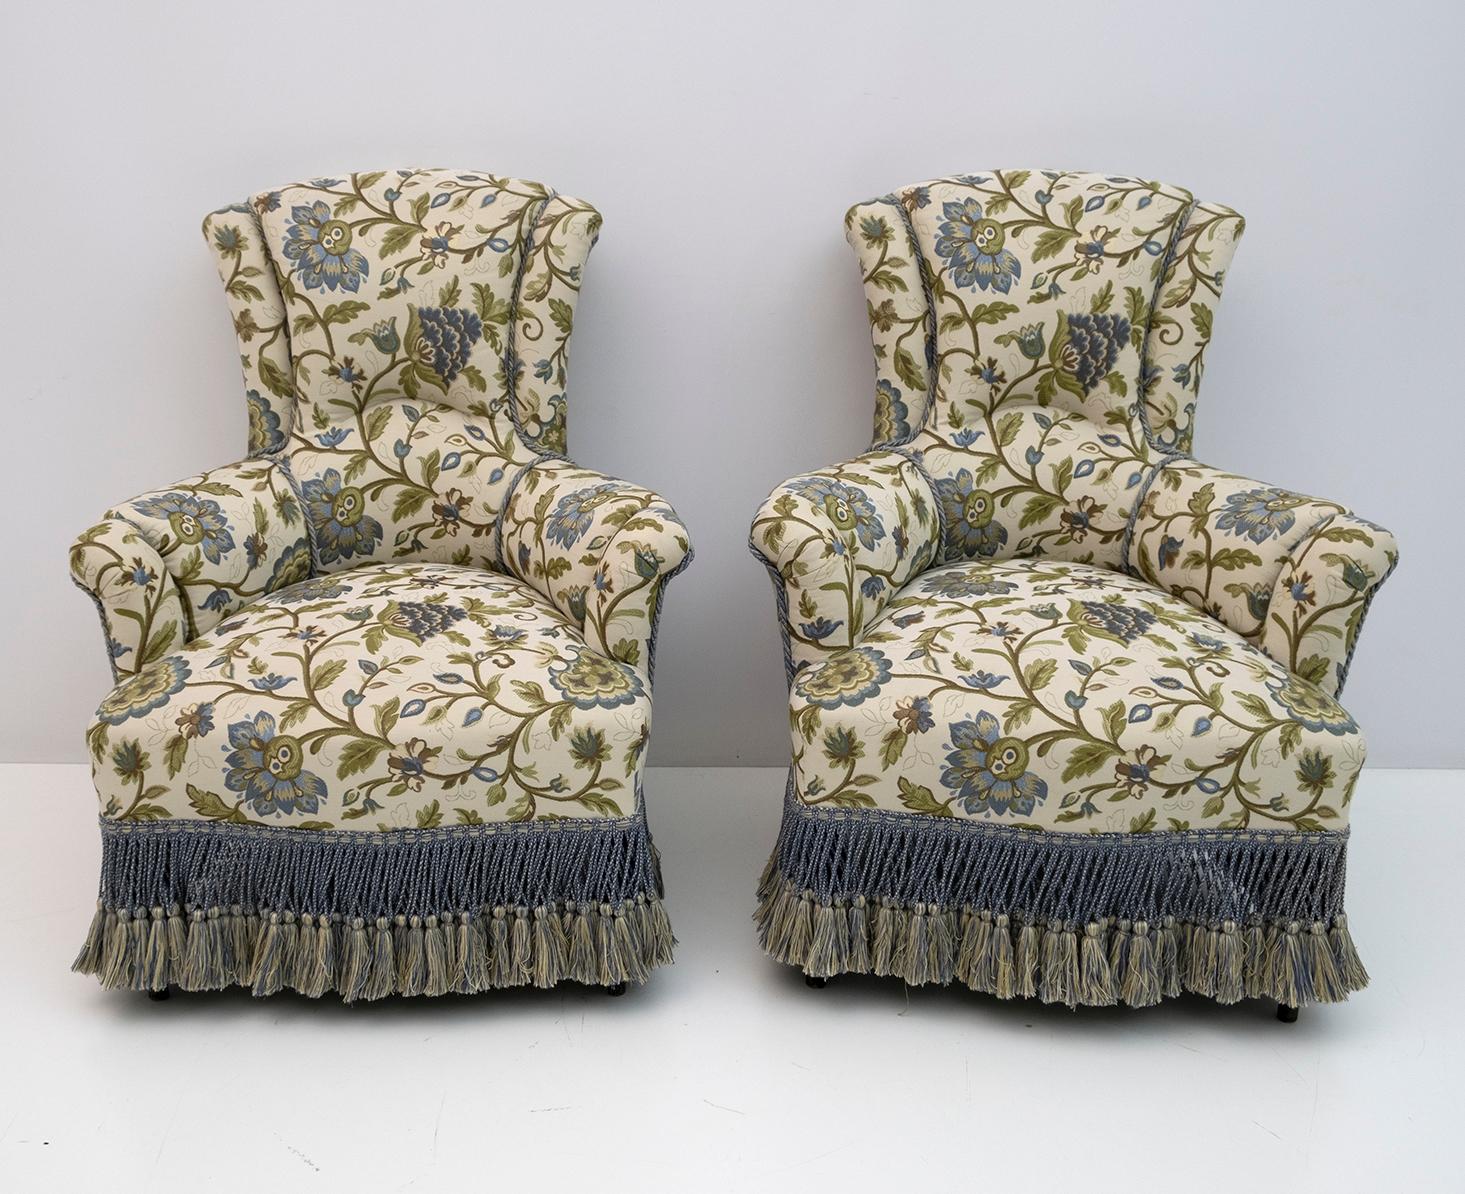 Paire de fauteuils du XIXe siècle, période Napoléon III. Les fauteuils ont été restaurés et la tapisserie a été remplacée par un magnifique brocart italien. France, 1870.